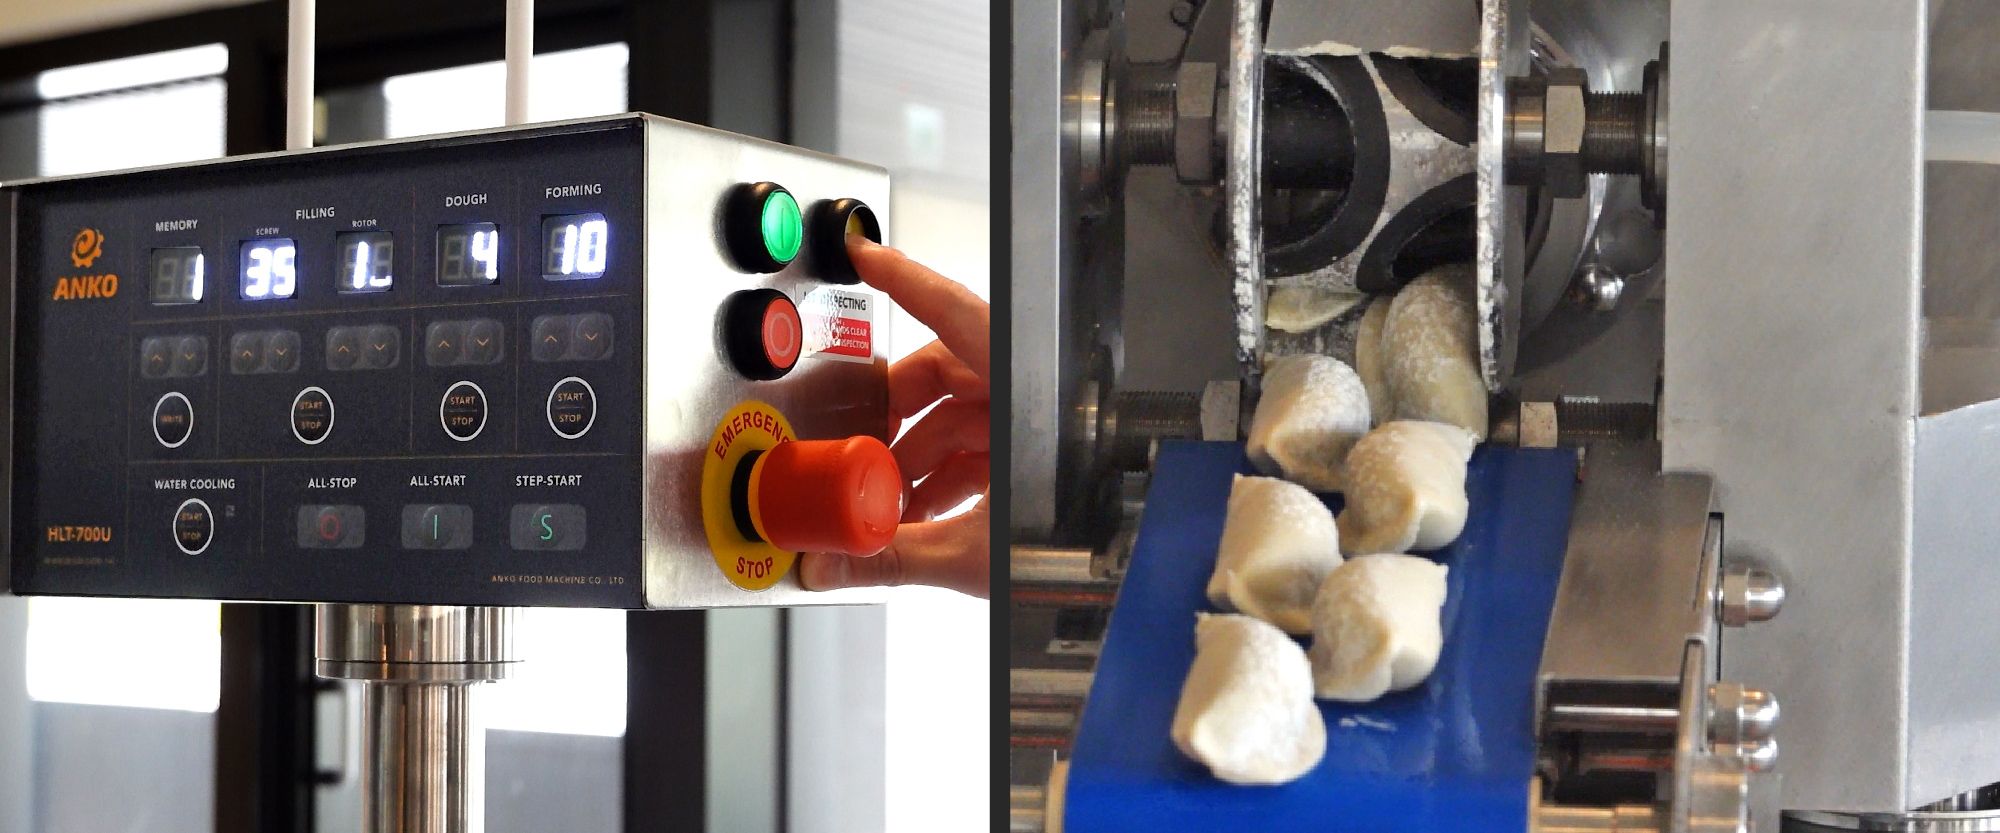 ANKO Fábrica de máquinas de alimentos digitales IoT